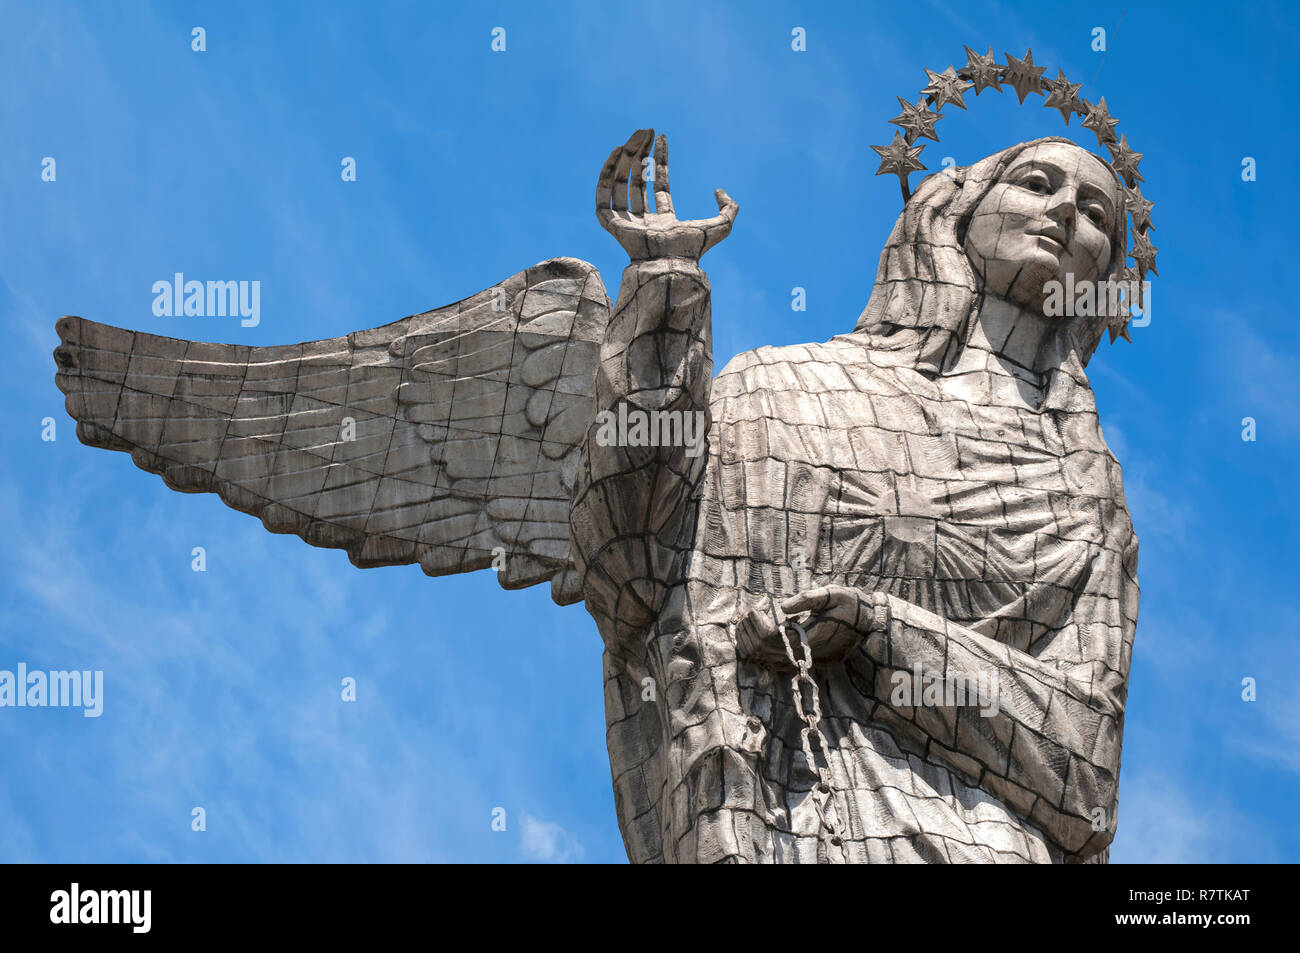 Virgin Mary de Quito Statue, El Panecillo hill, Quito, Pichincha Province, Ecuador Stock Photo